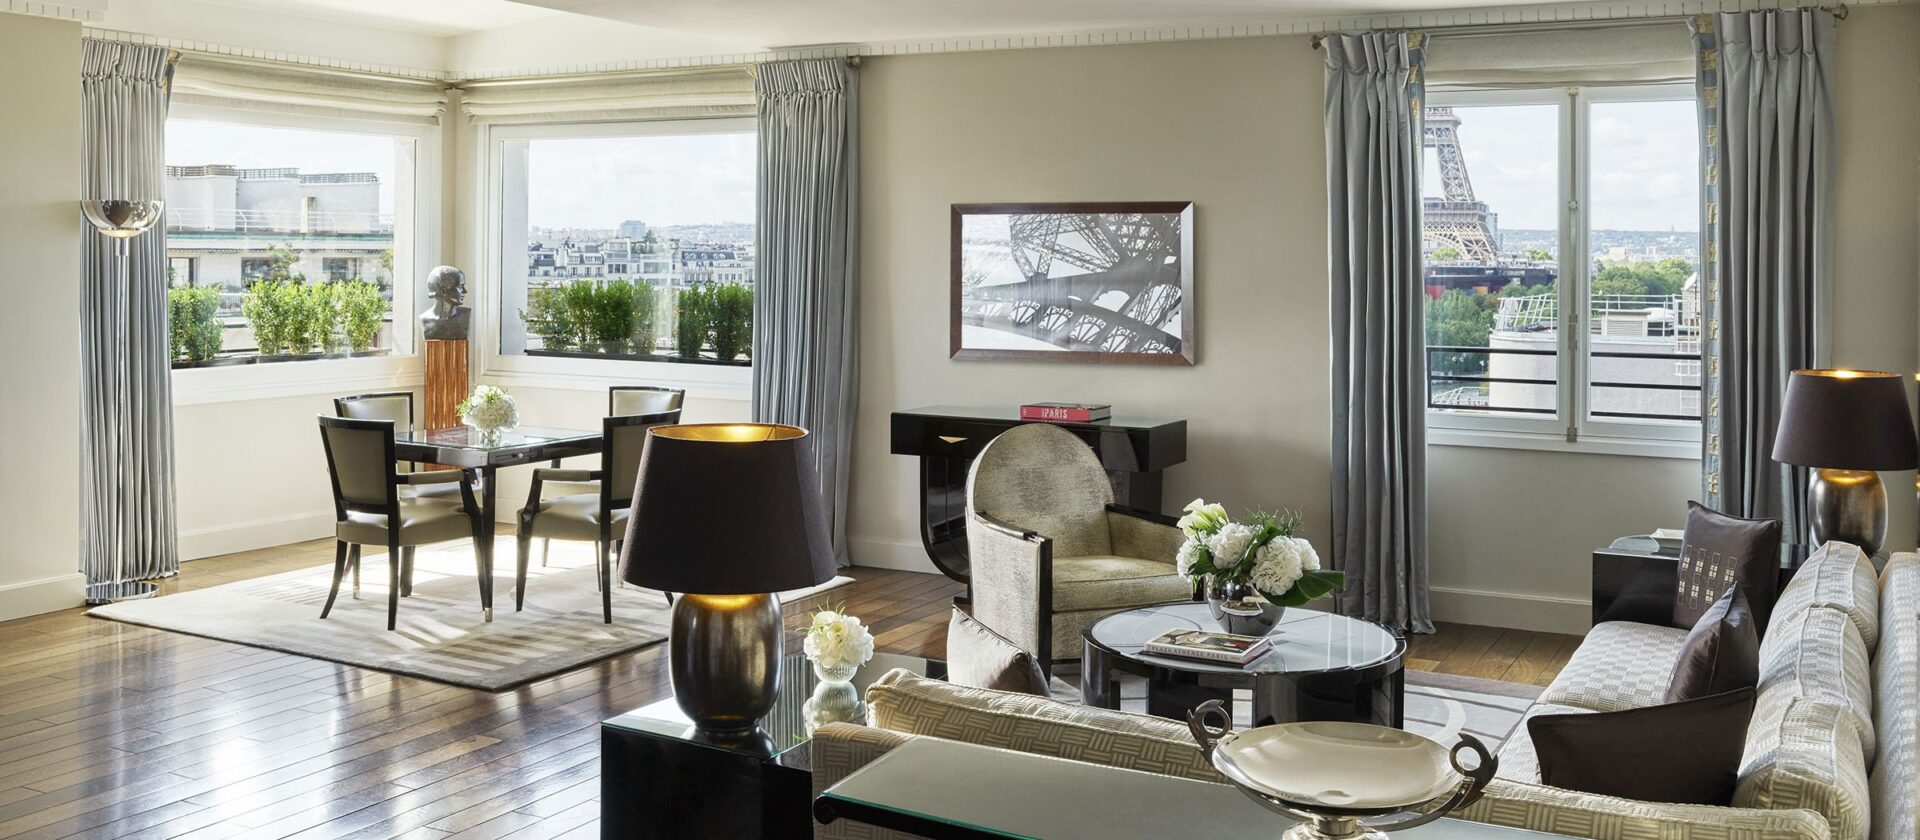 艾菲尔签名套房客厅与艾菲尔铁塔背景在巴黎广场雅典娜酒店